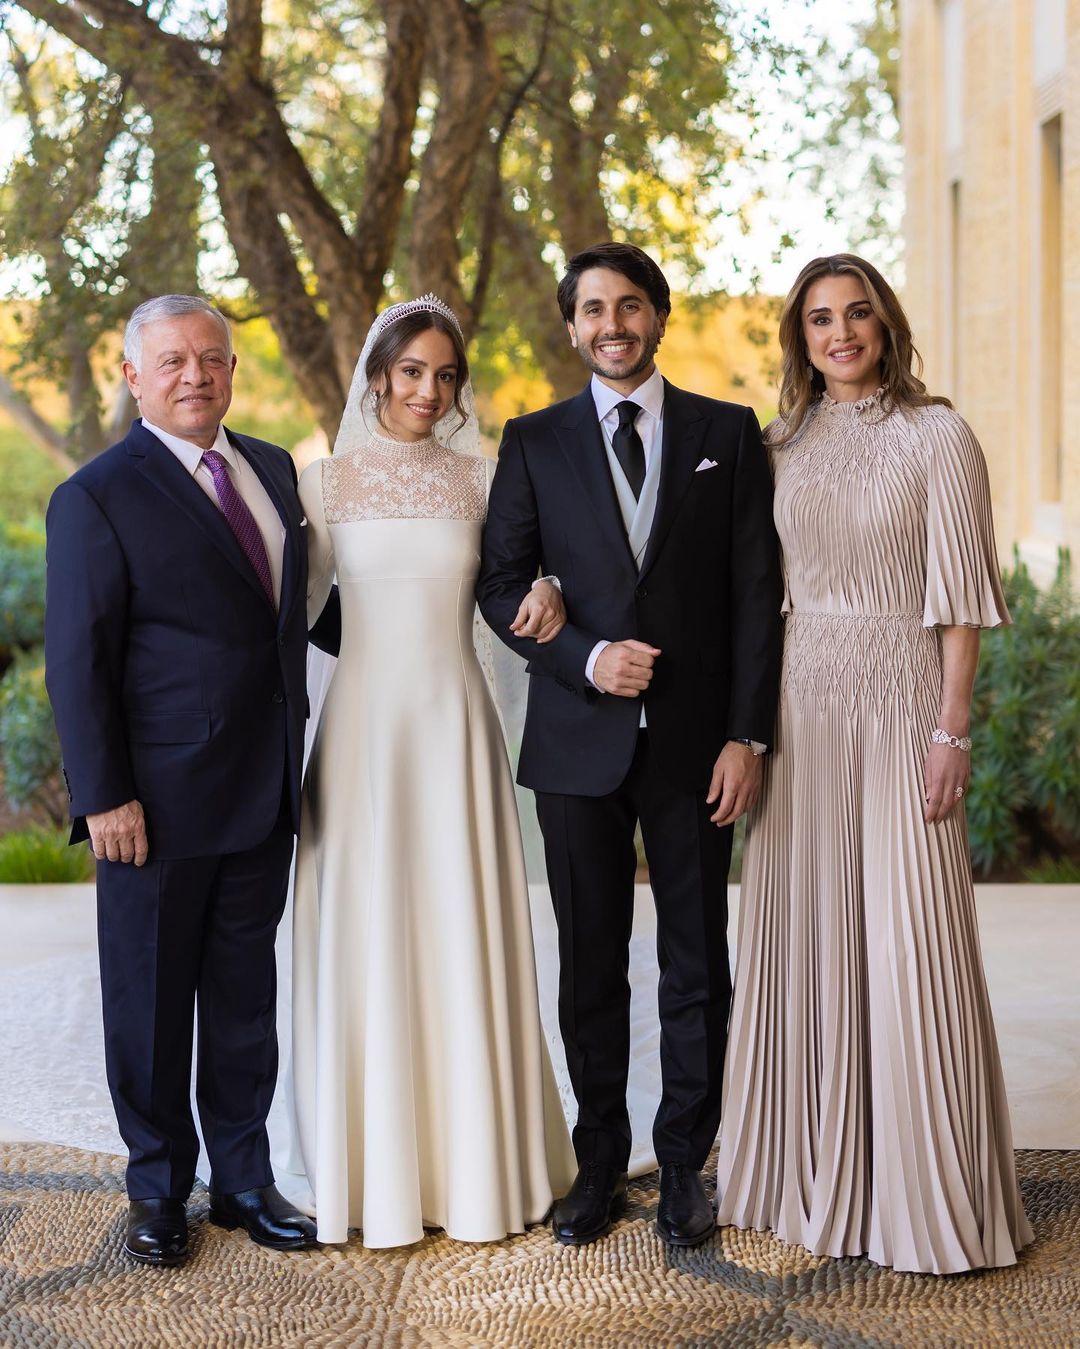 Скромно, но со вкусом: дочь короля и королевы Иордании удивила выбором свадебного платья